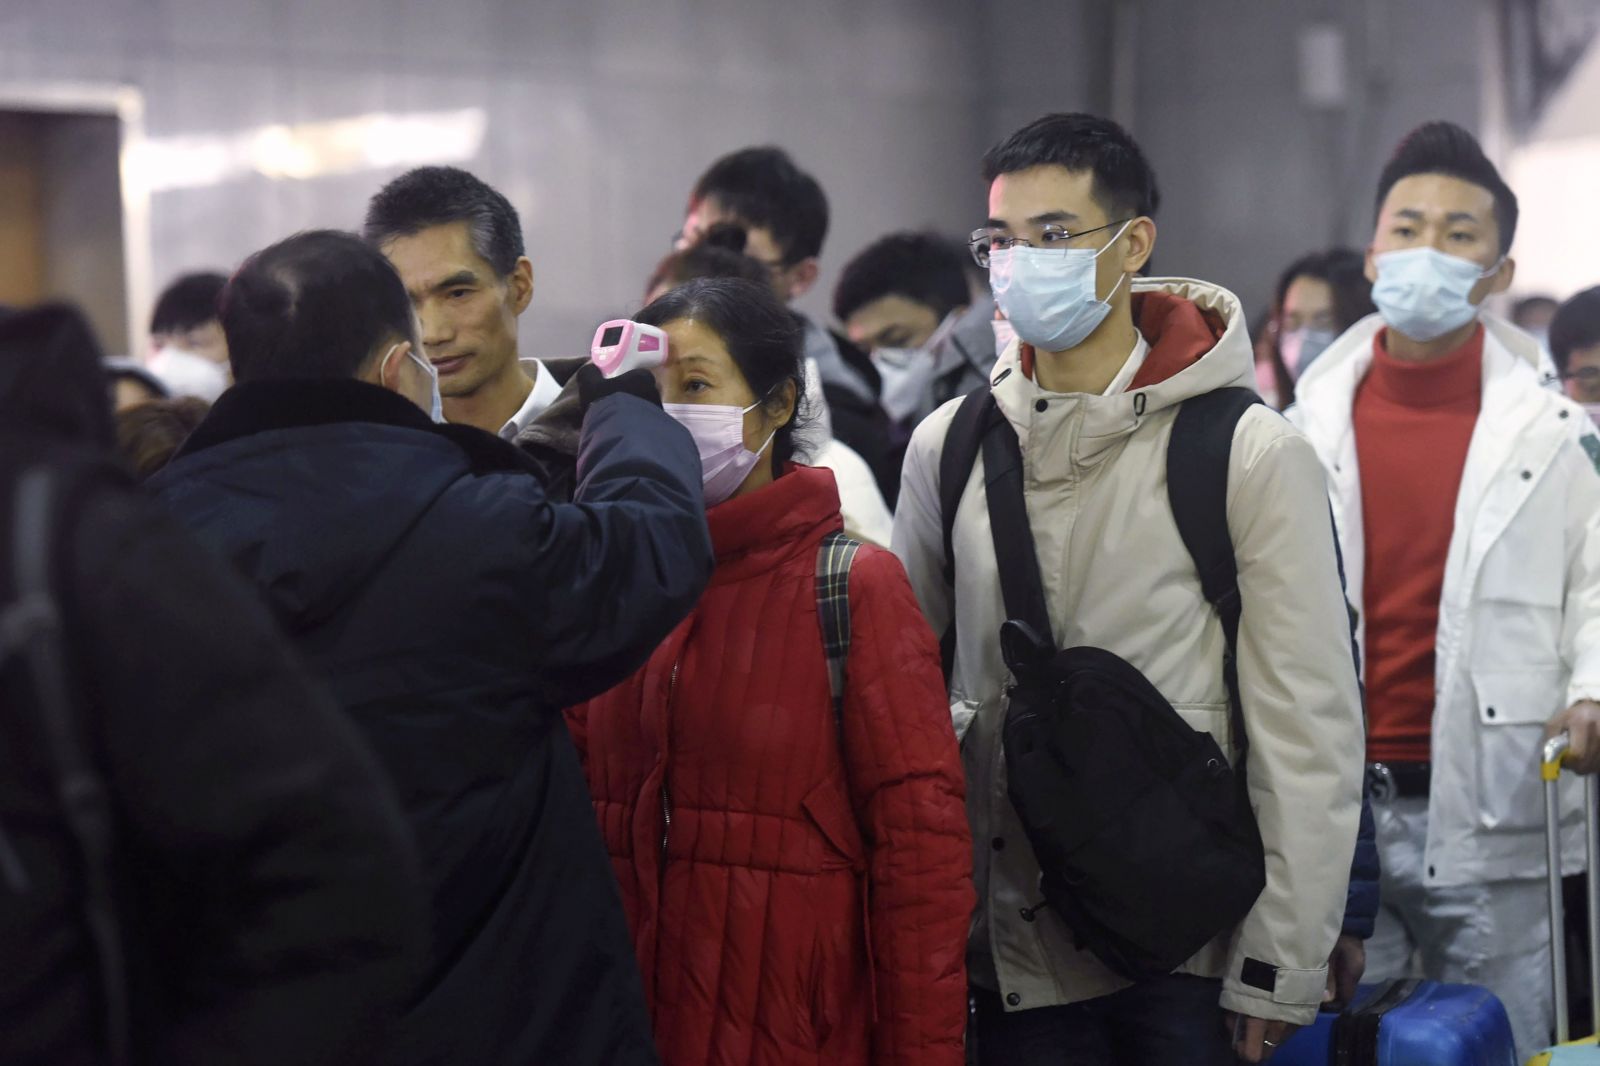 Čínsky koronavírus je vraj zatiaľ pod kontrolou. Treba sa nákazy báť?